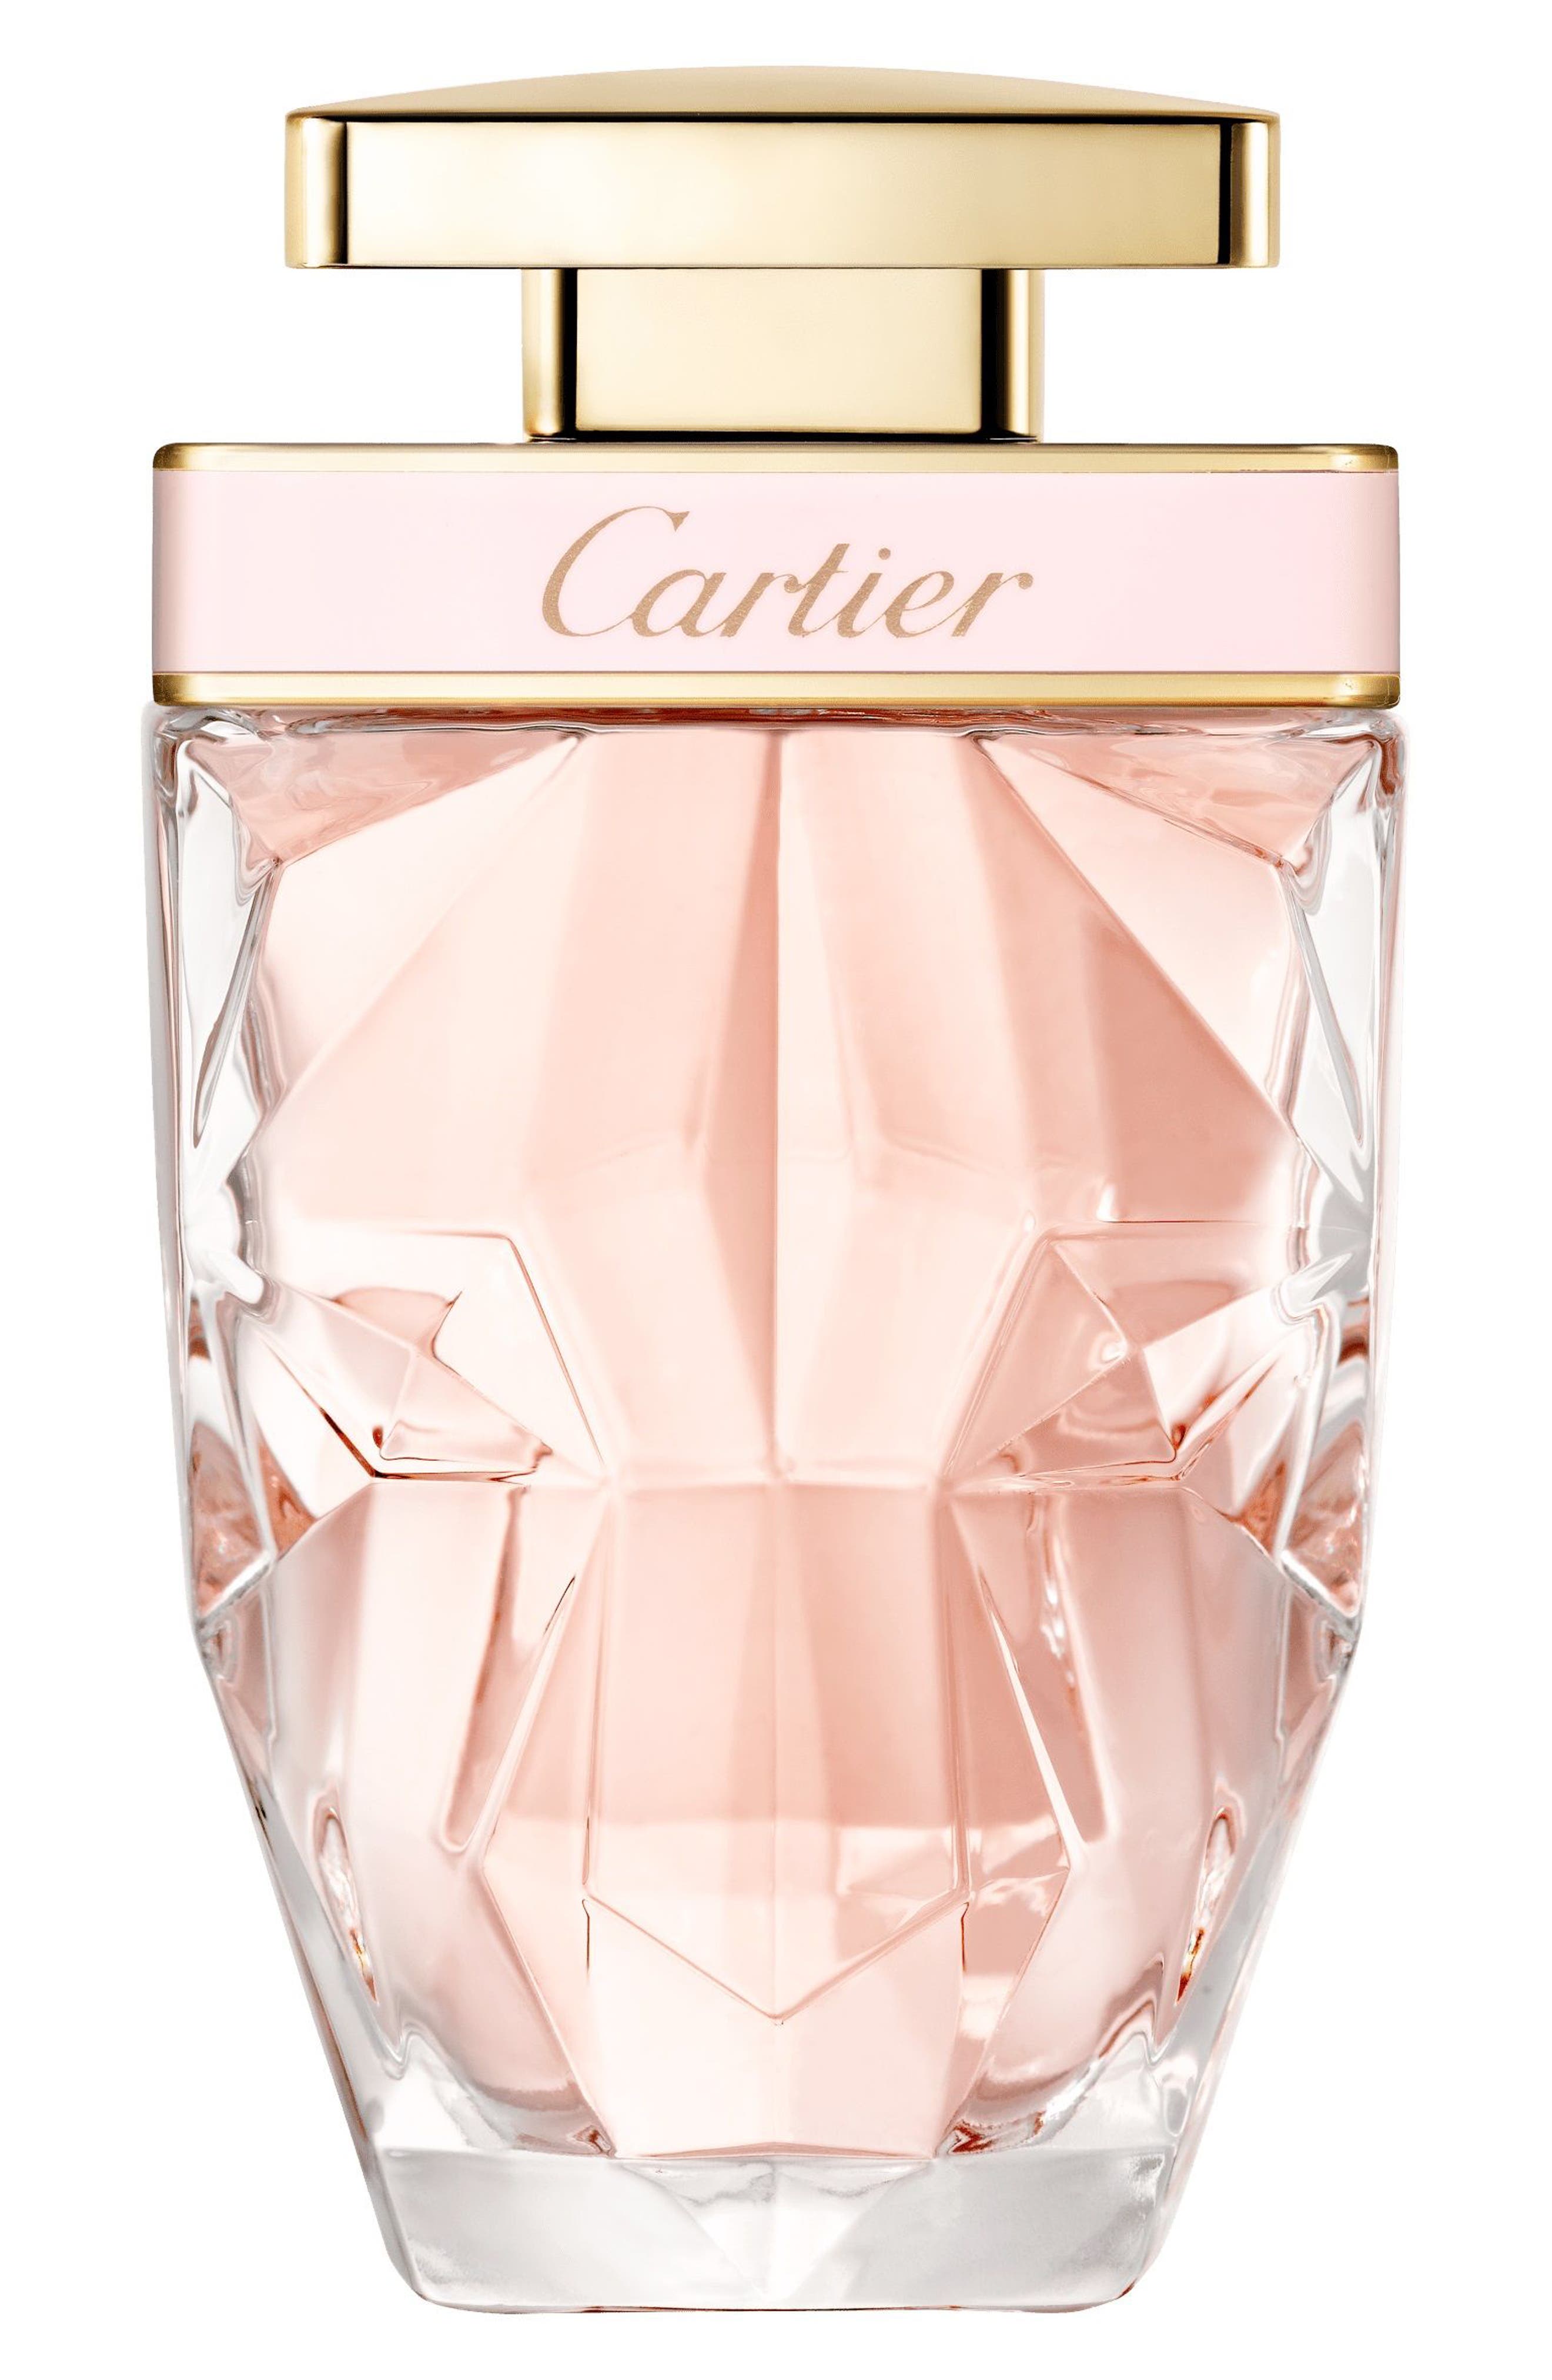 Cartier La Panthere Eau de Toilette at Nordstrom, Size 1.6 Oz